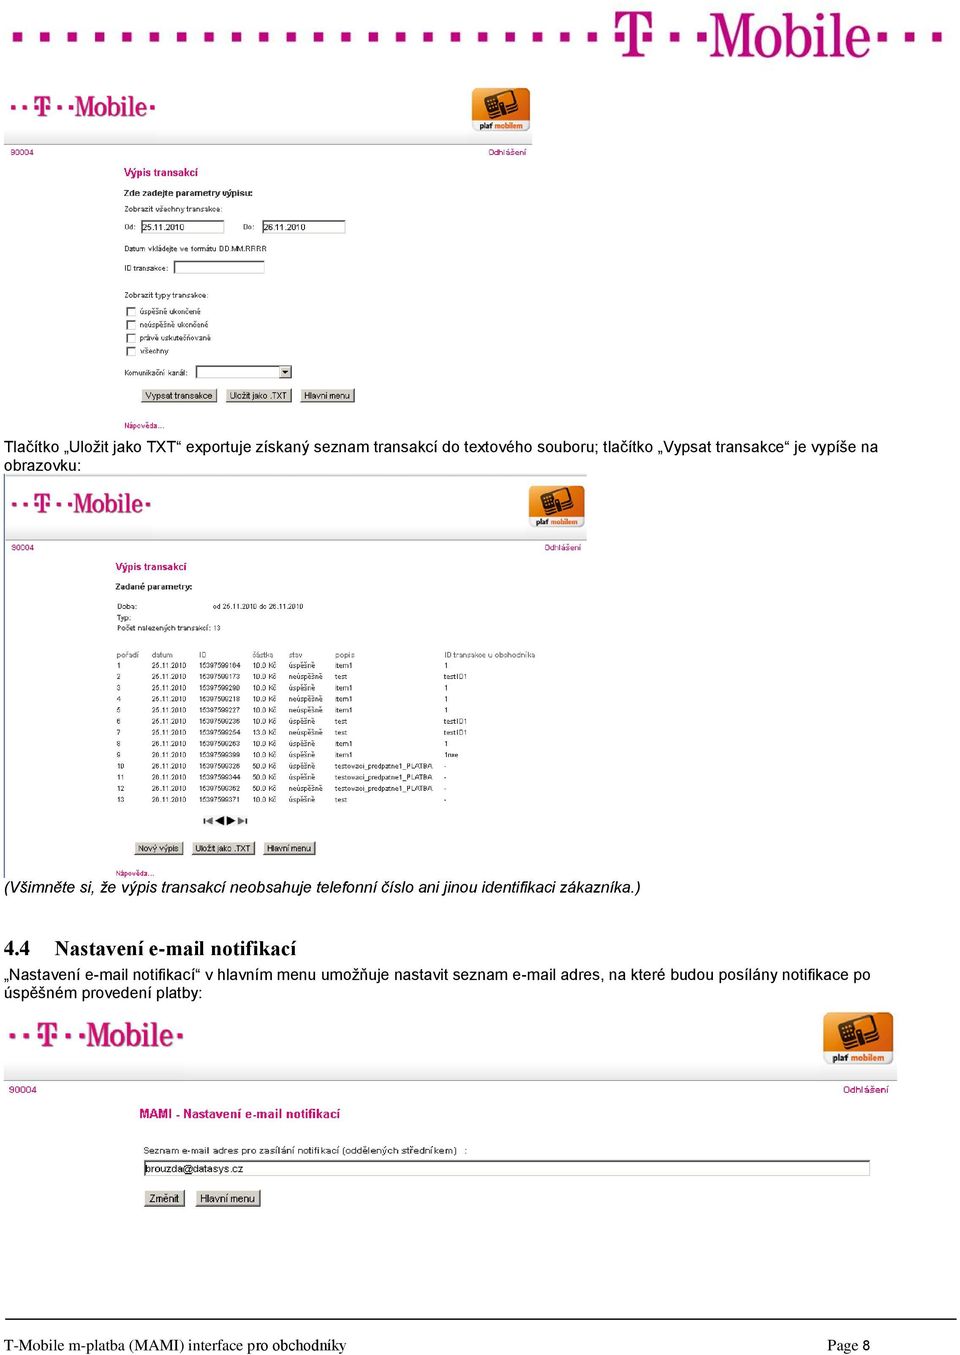 T-Mobile m-platba (MAMI) Interface pro obchodníky - PDF Stažení zdarma